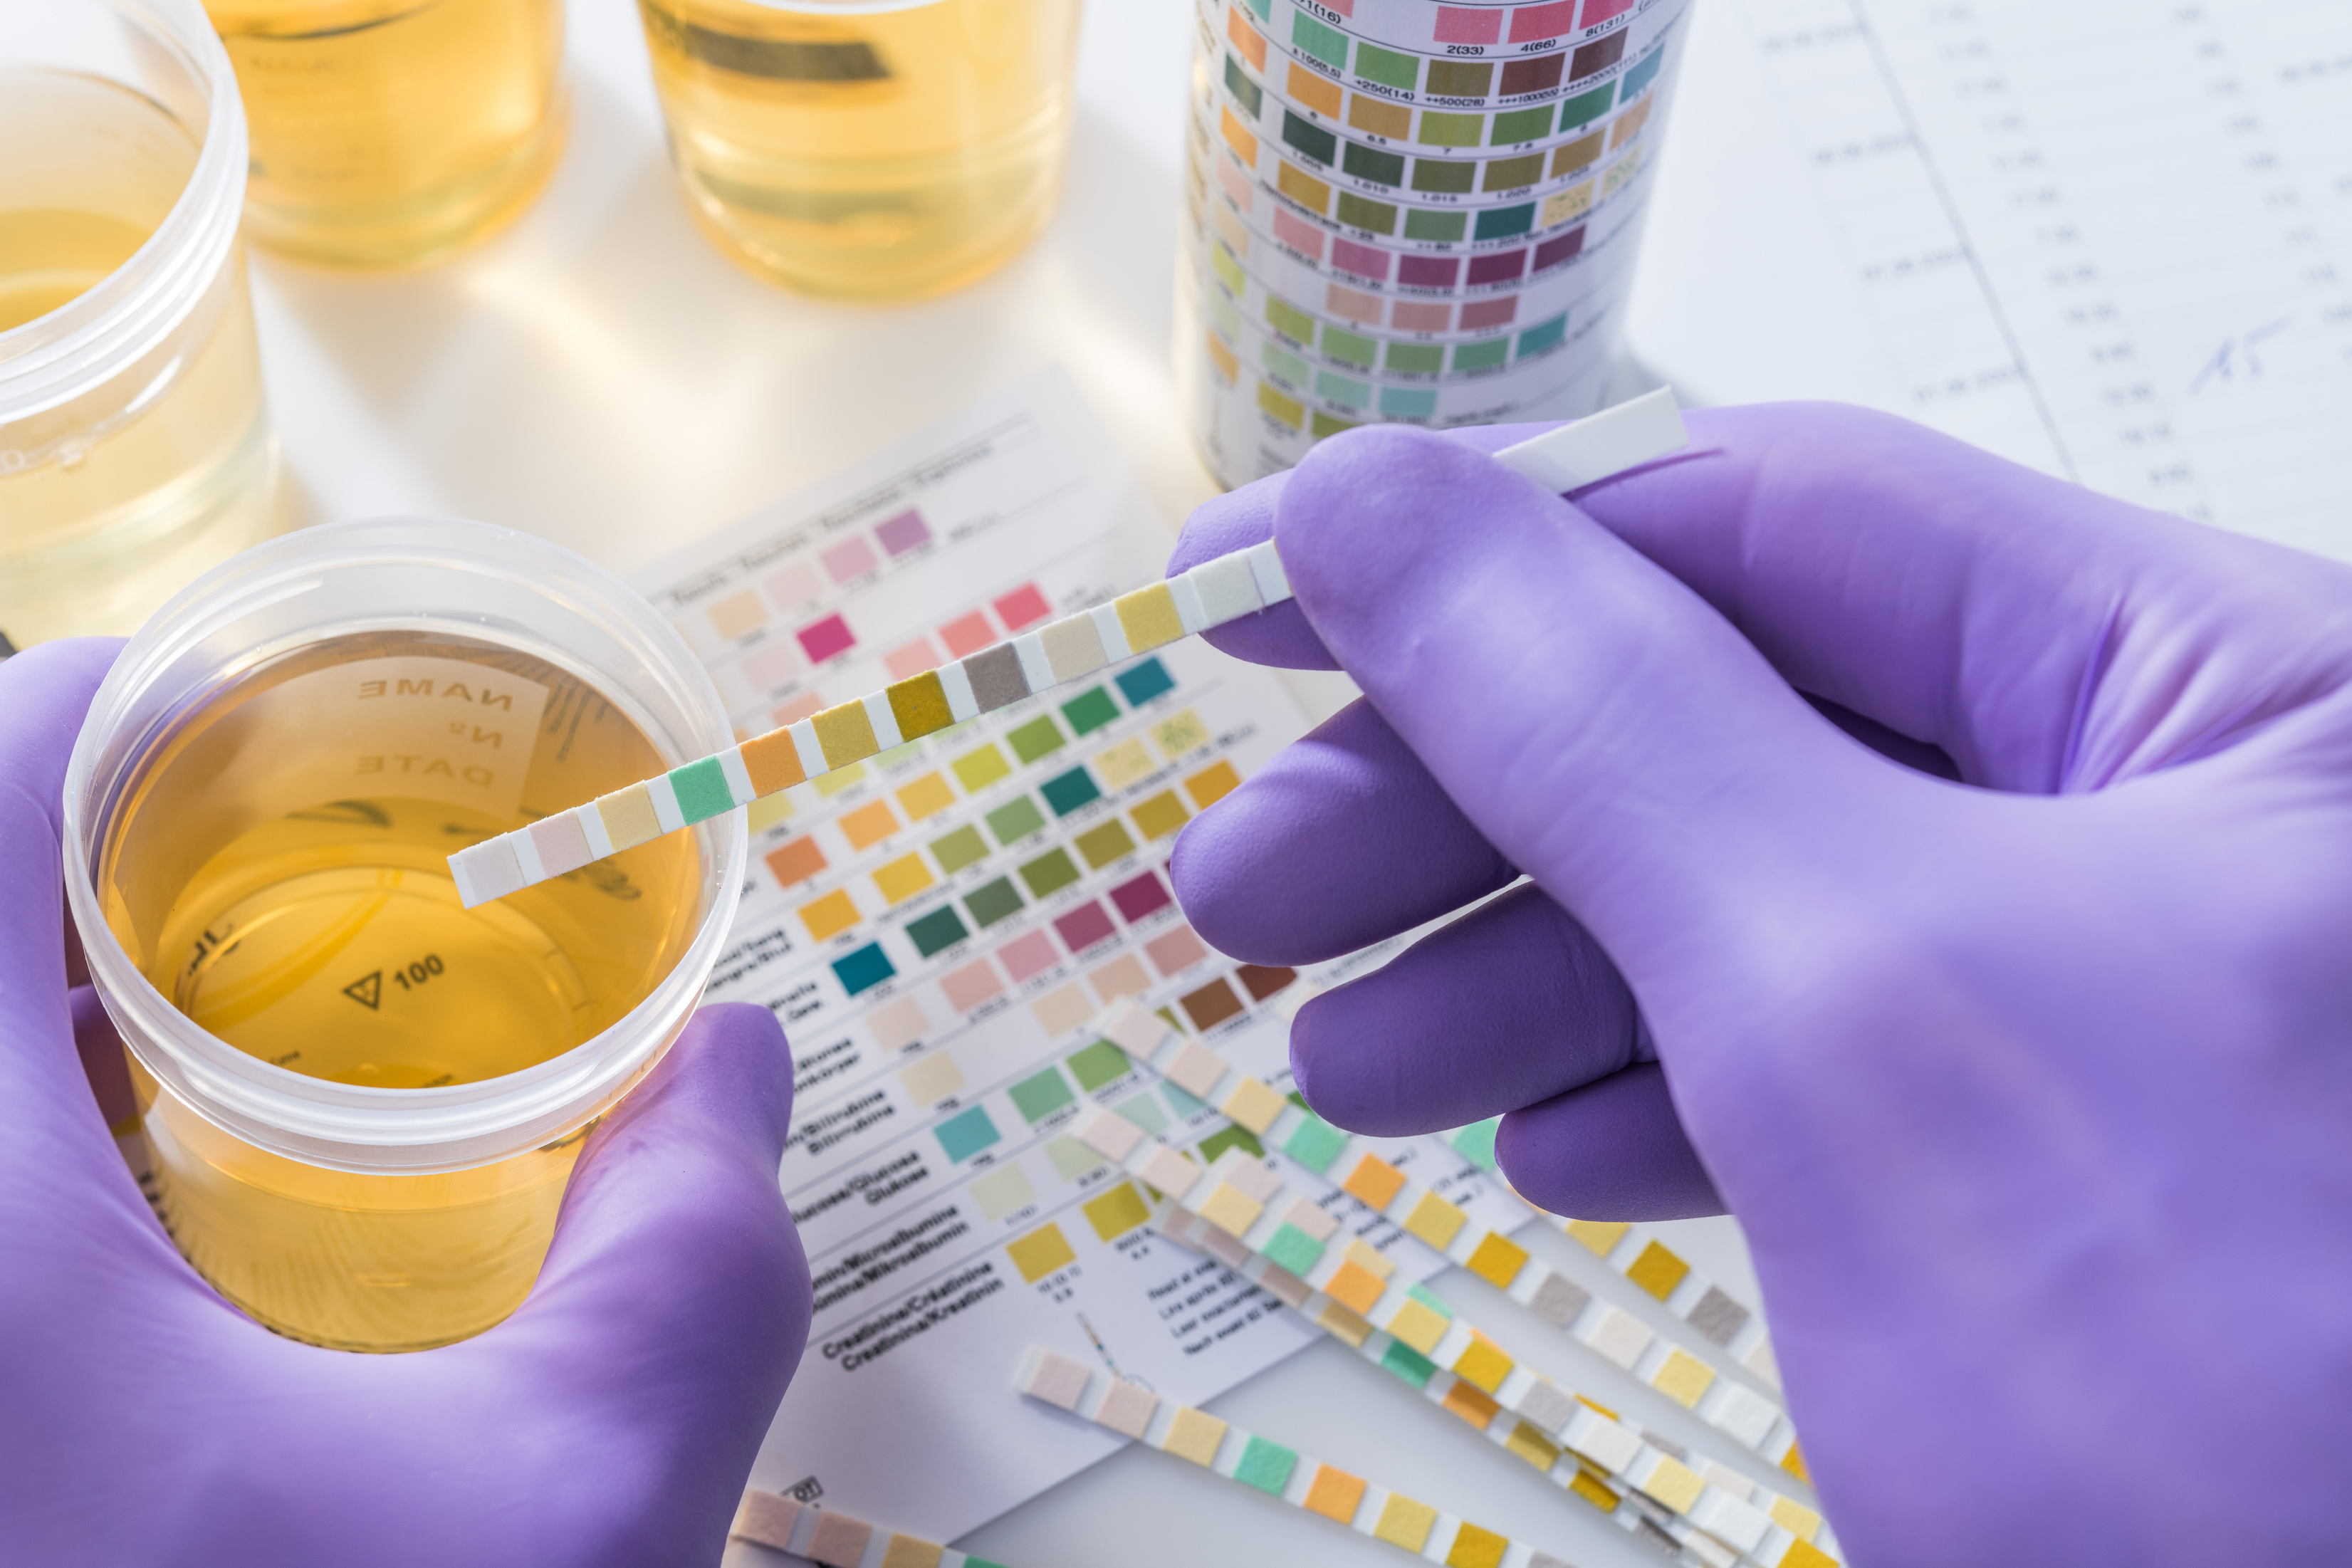 urine test strips in purple gloves